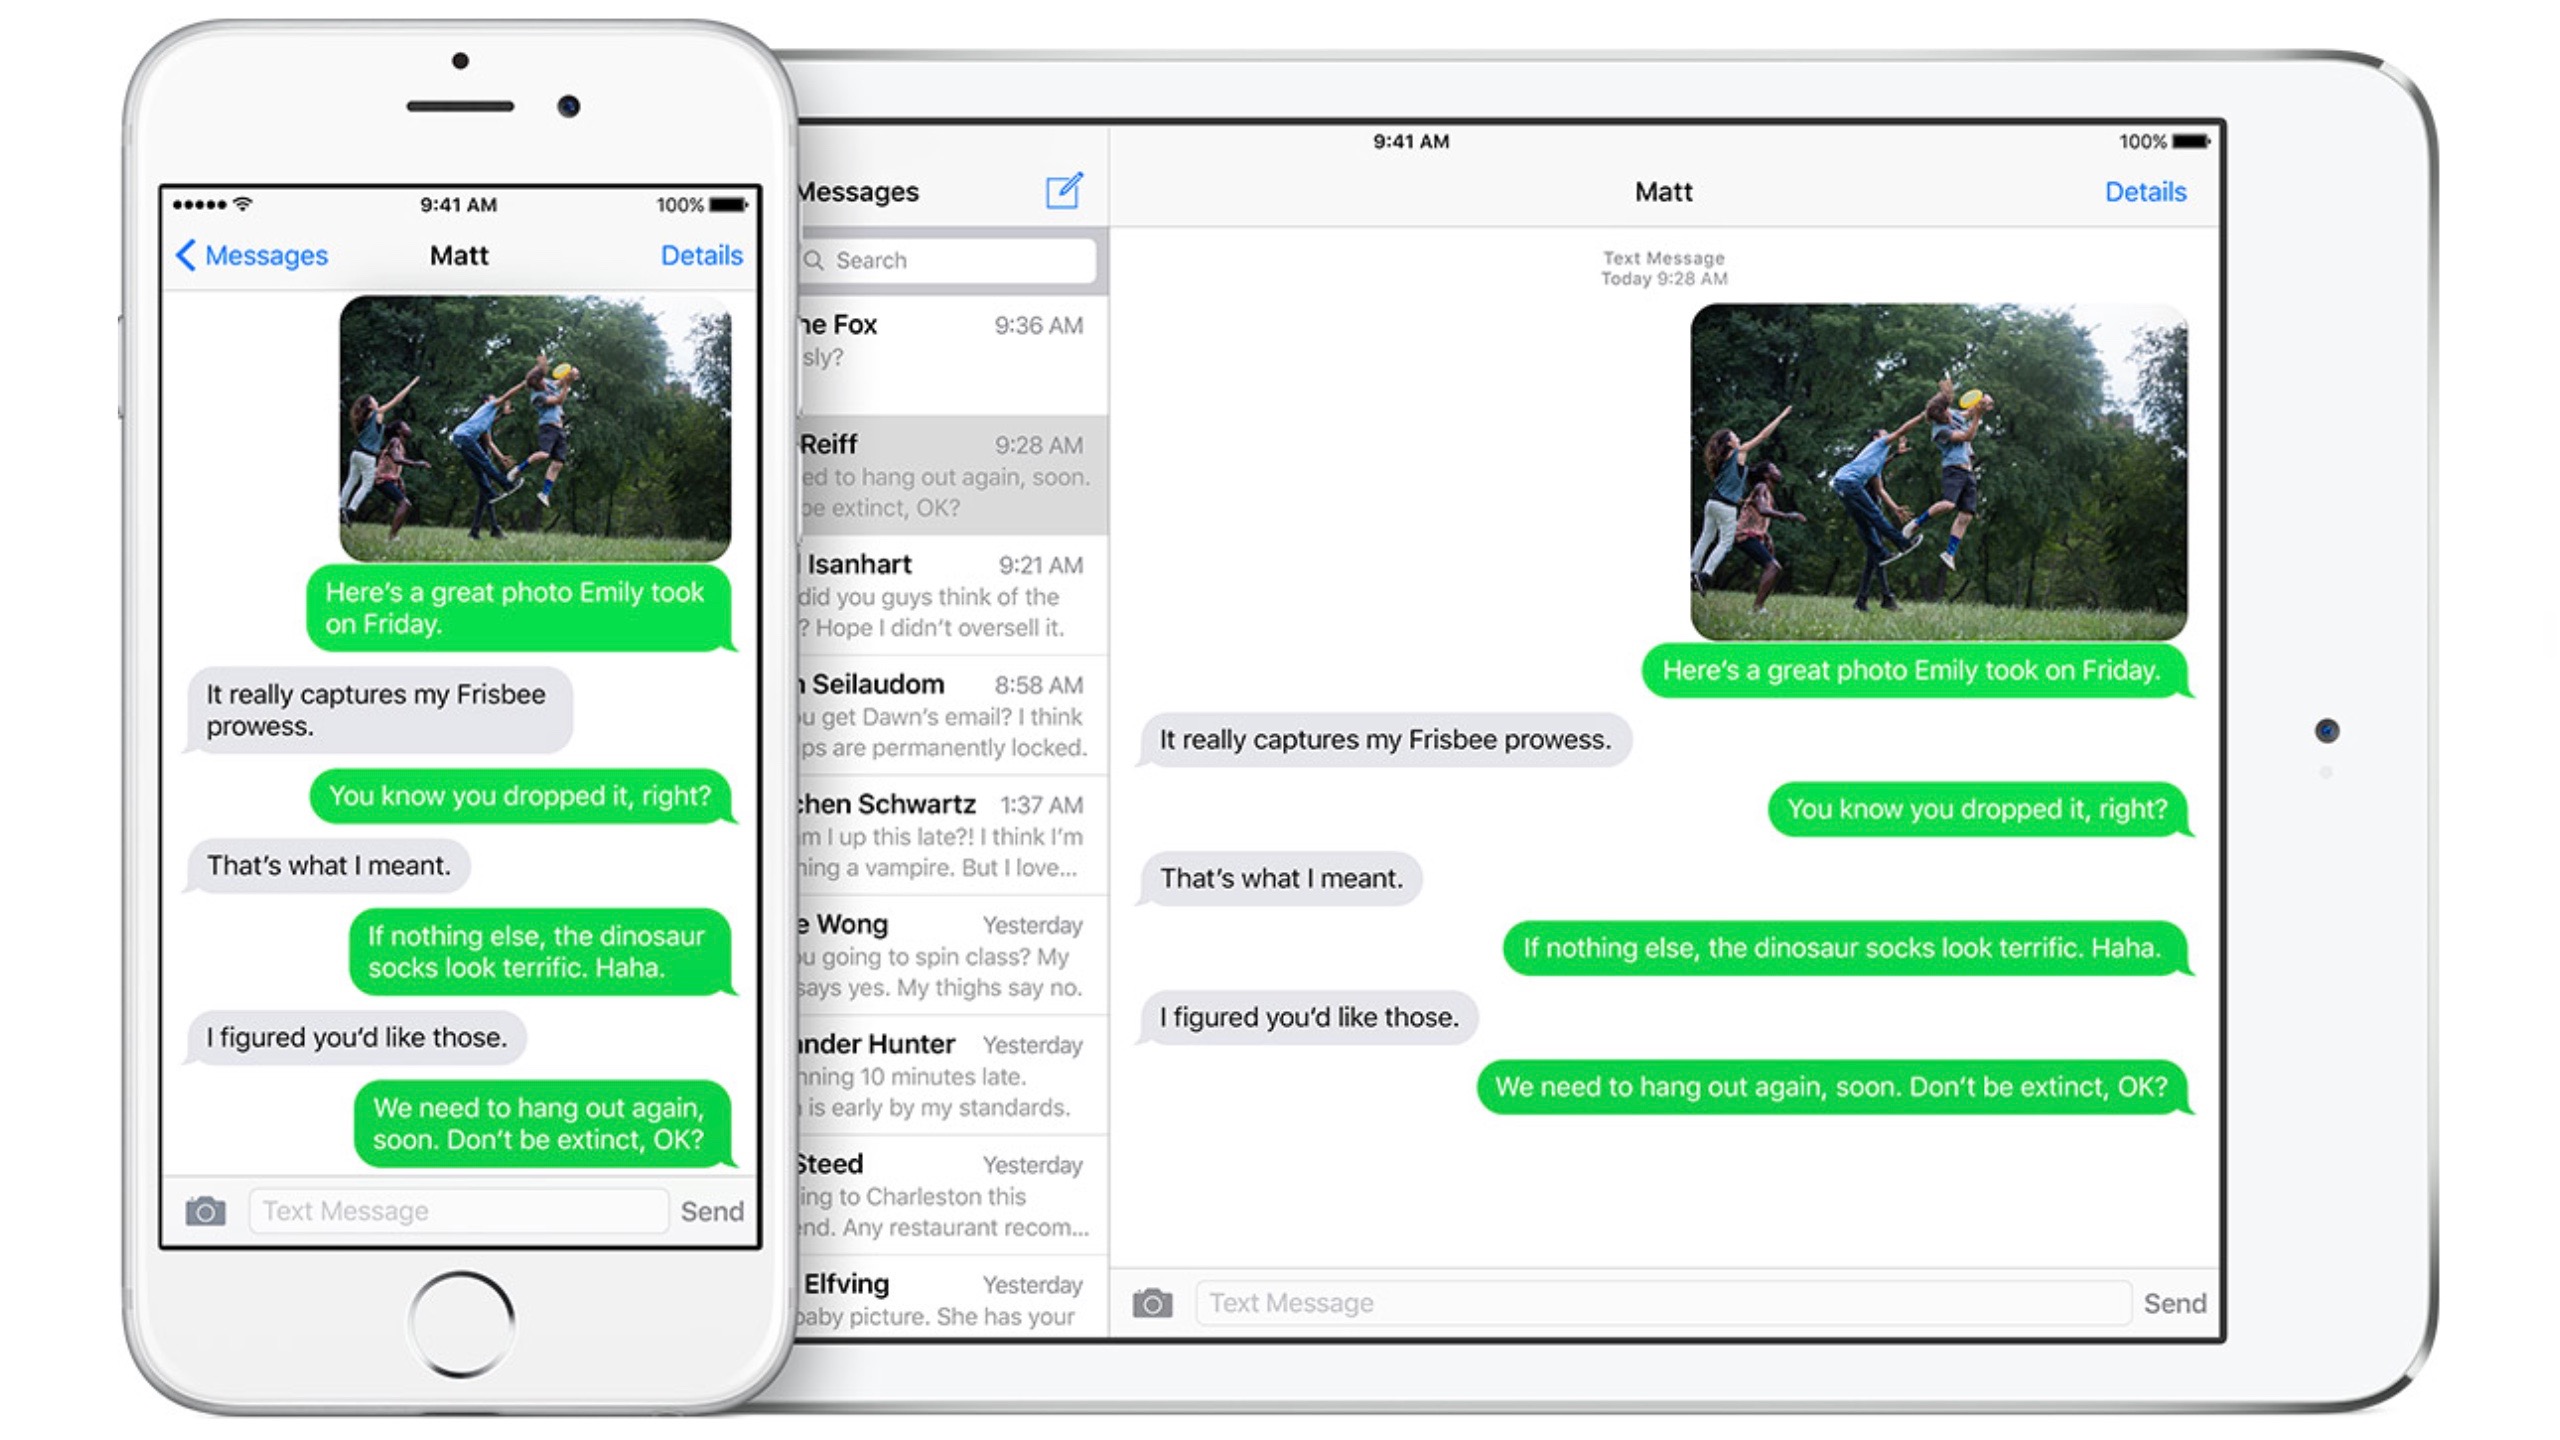 Messages iOS iPhone iPad iOS 9 16-9